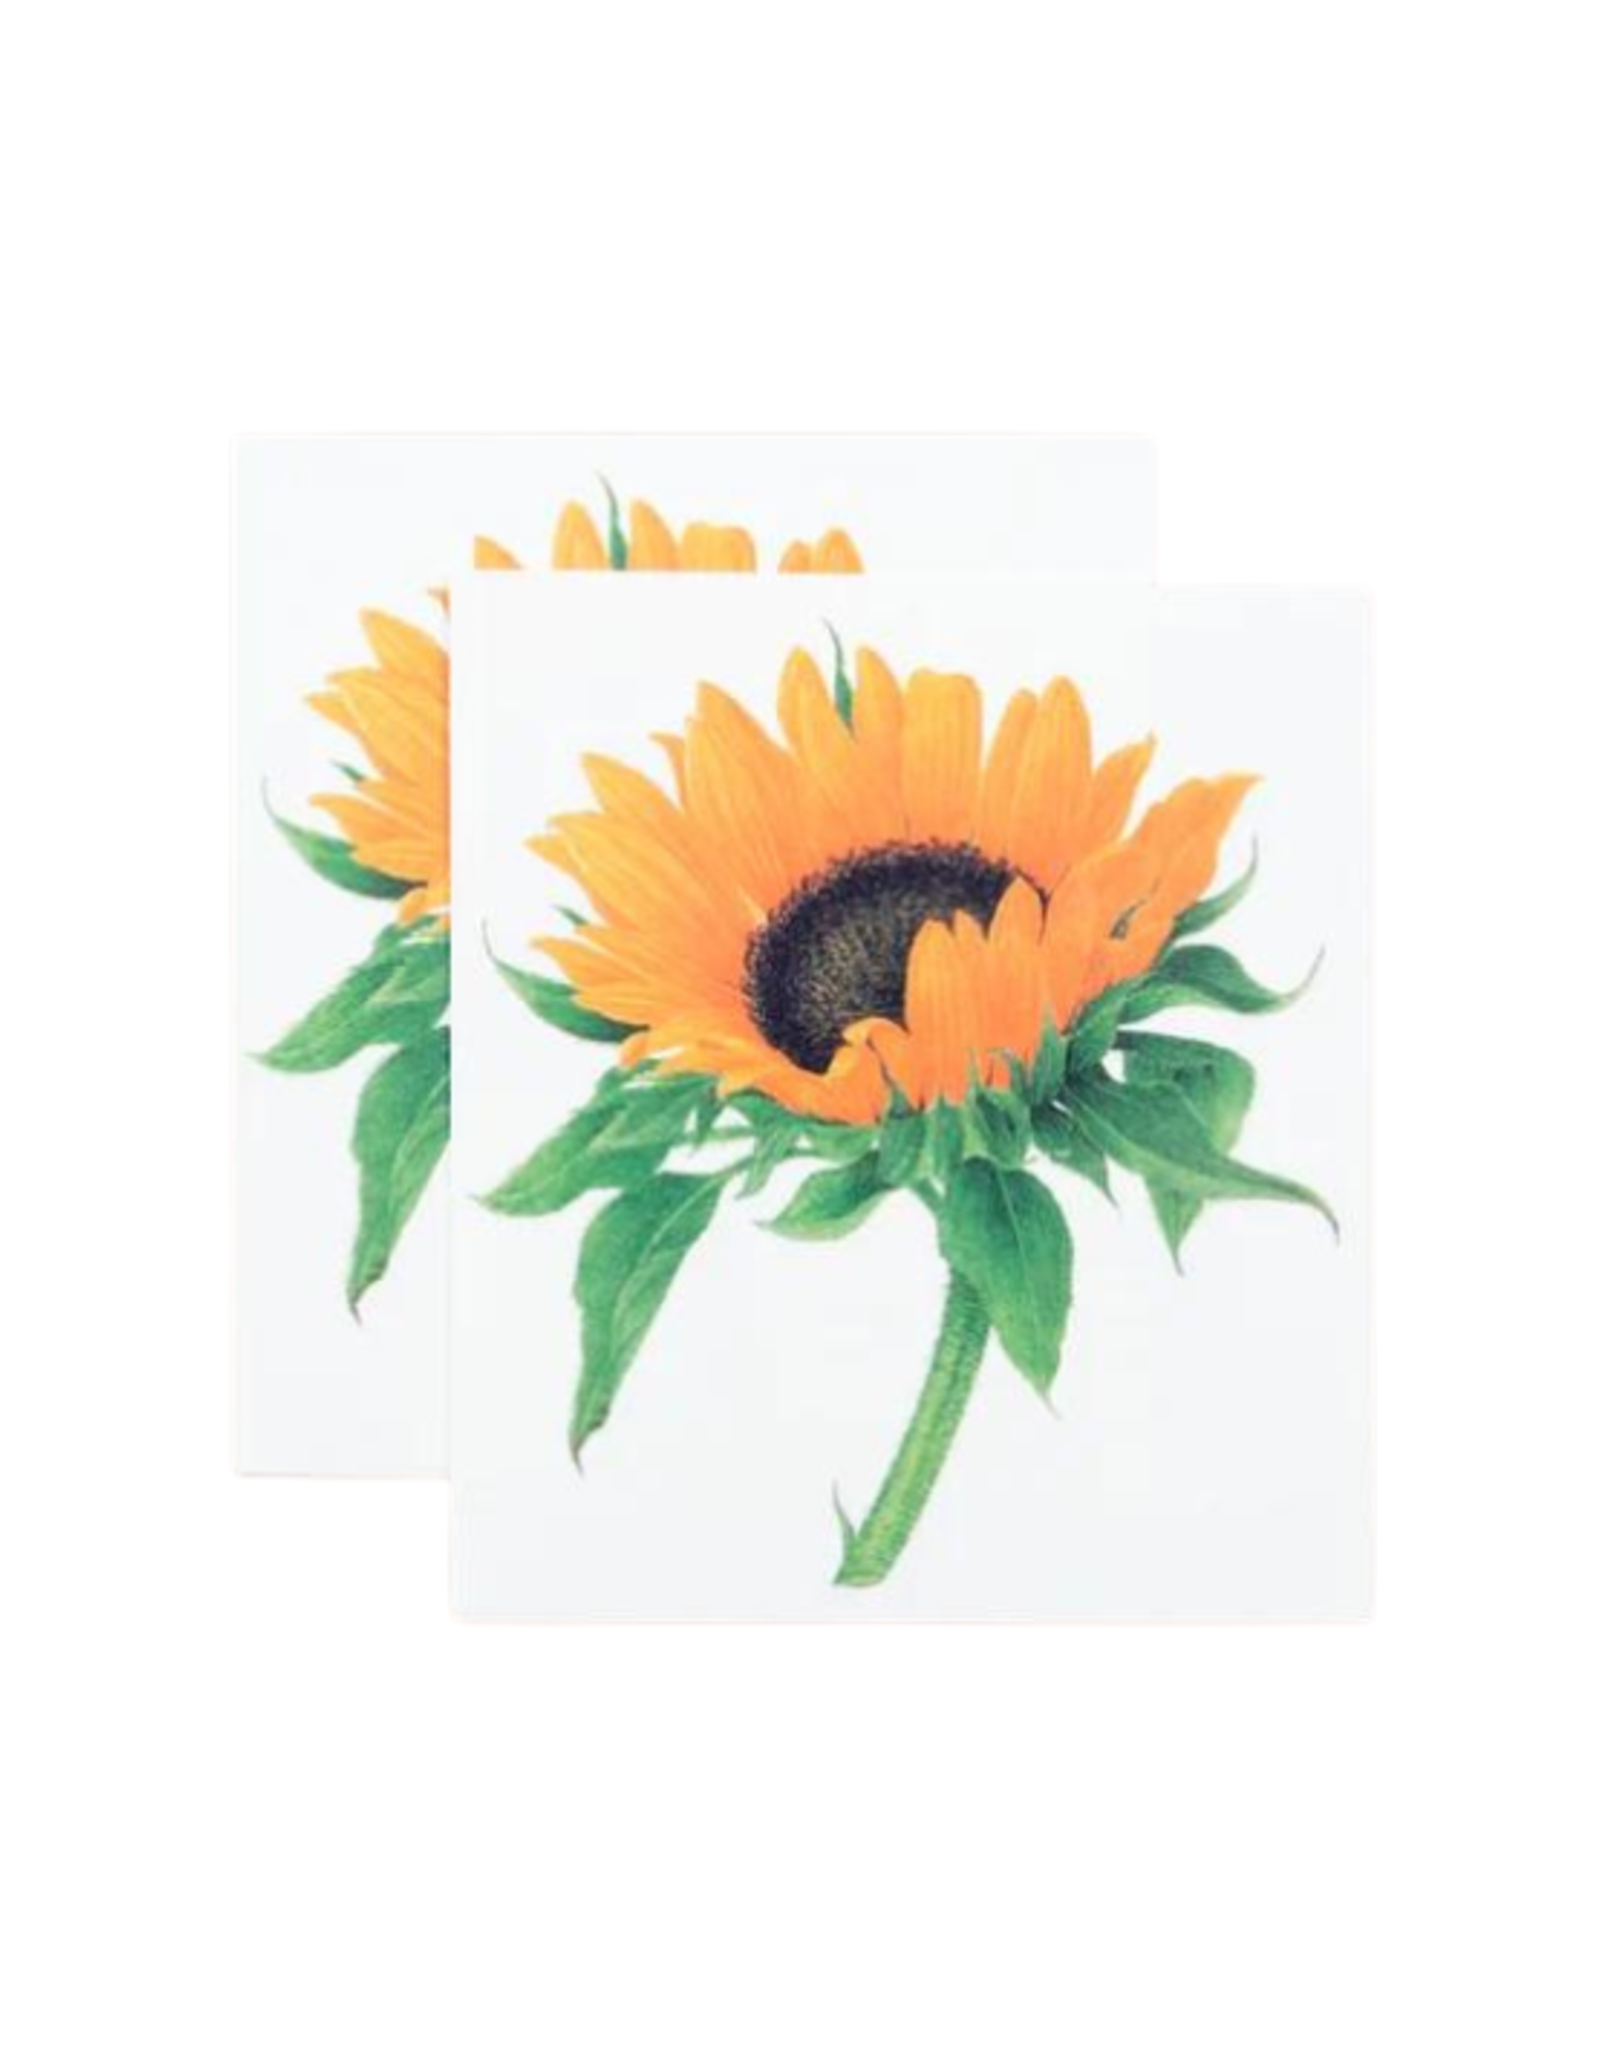 Tattly Tattly - Sunflower Tattoo Pair